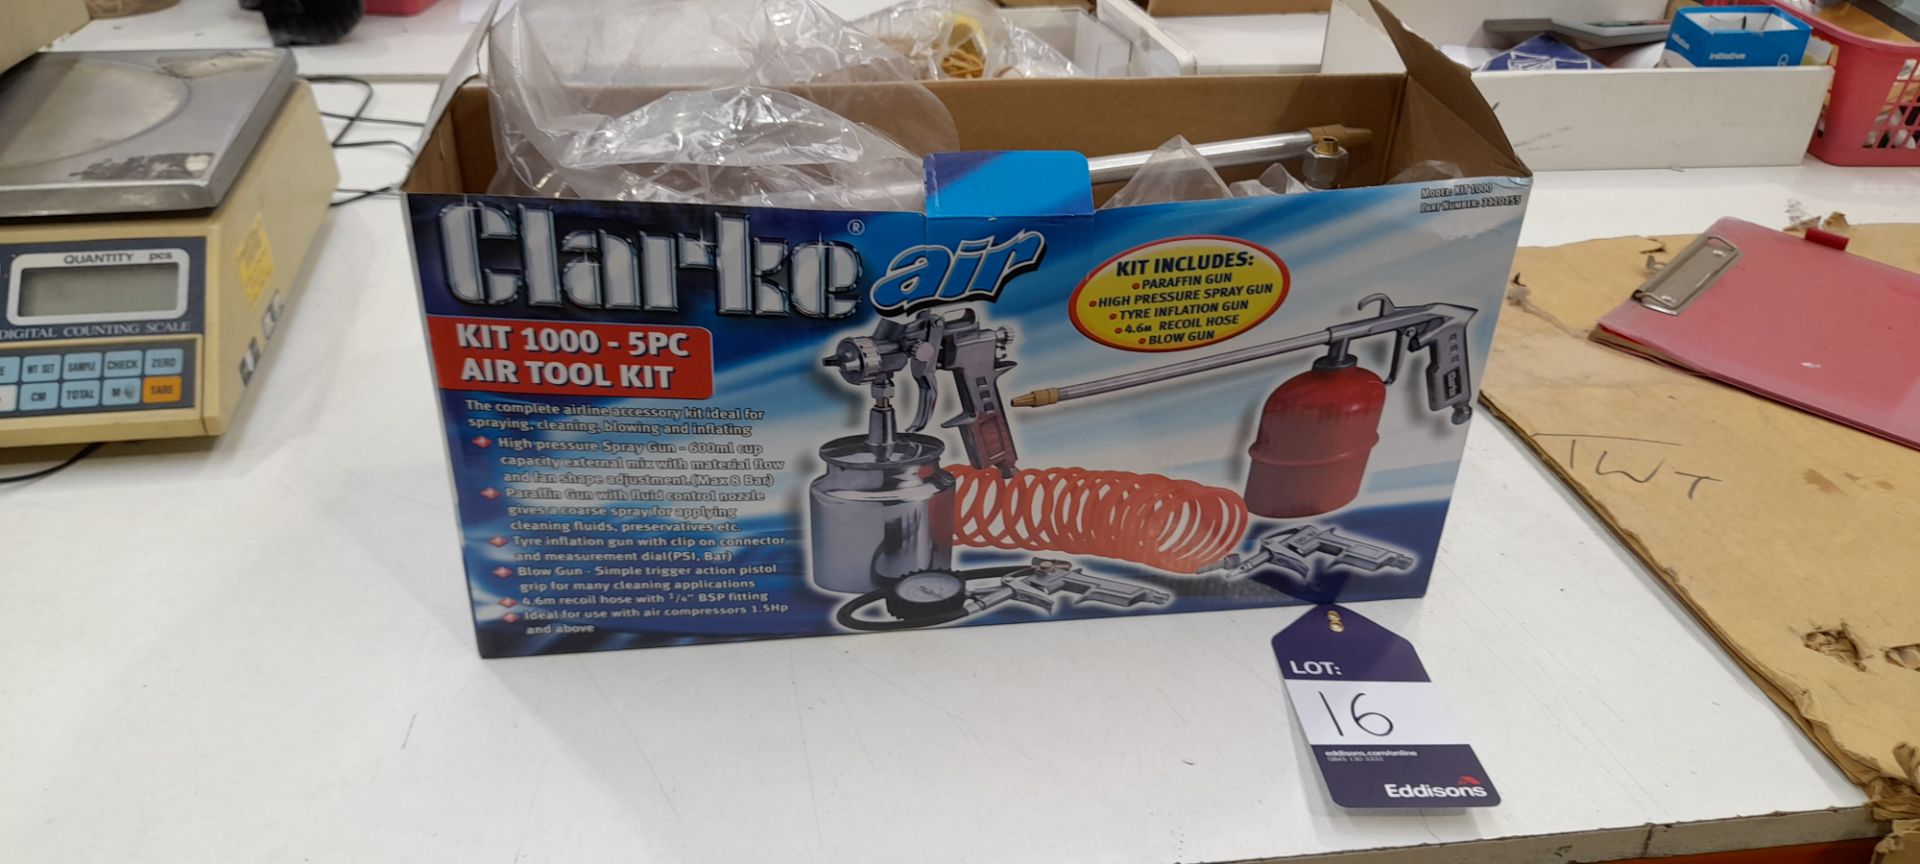 Clarke air kit 100 5 piece air tool kit